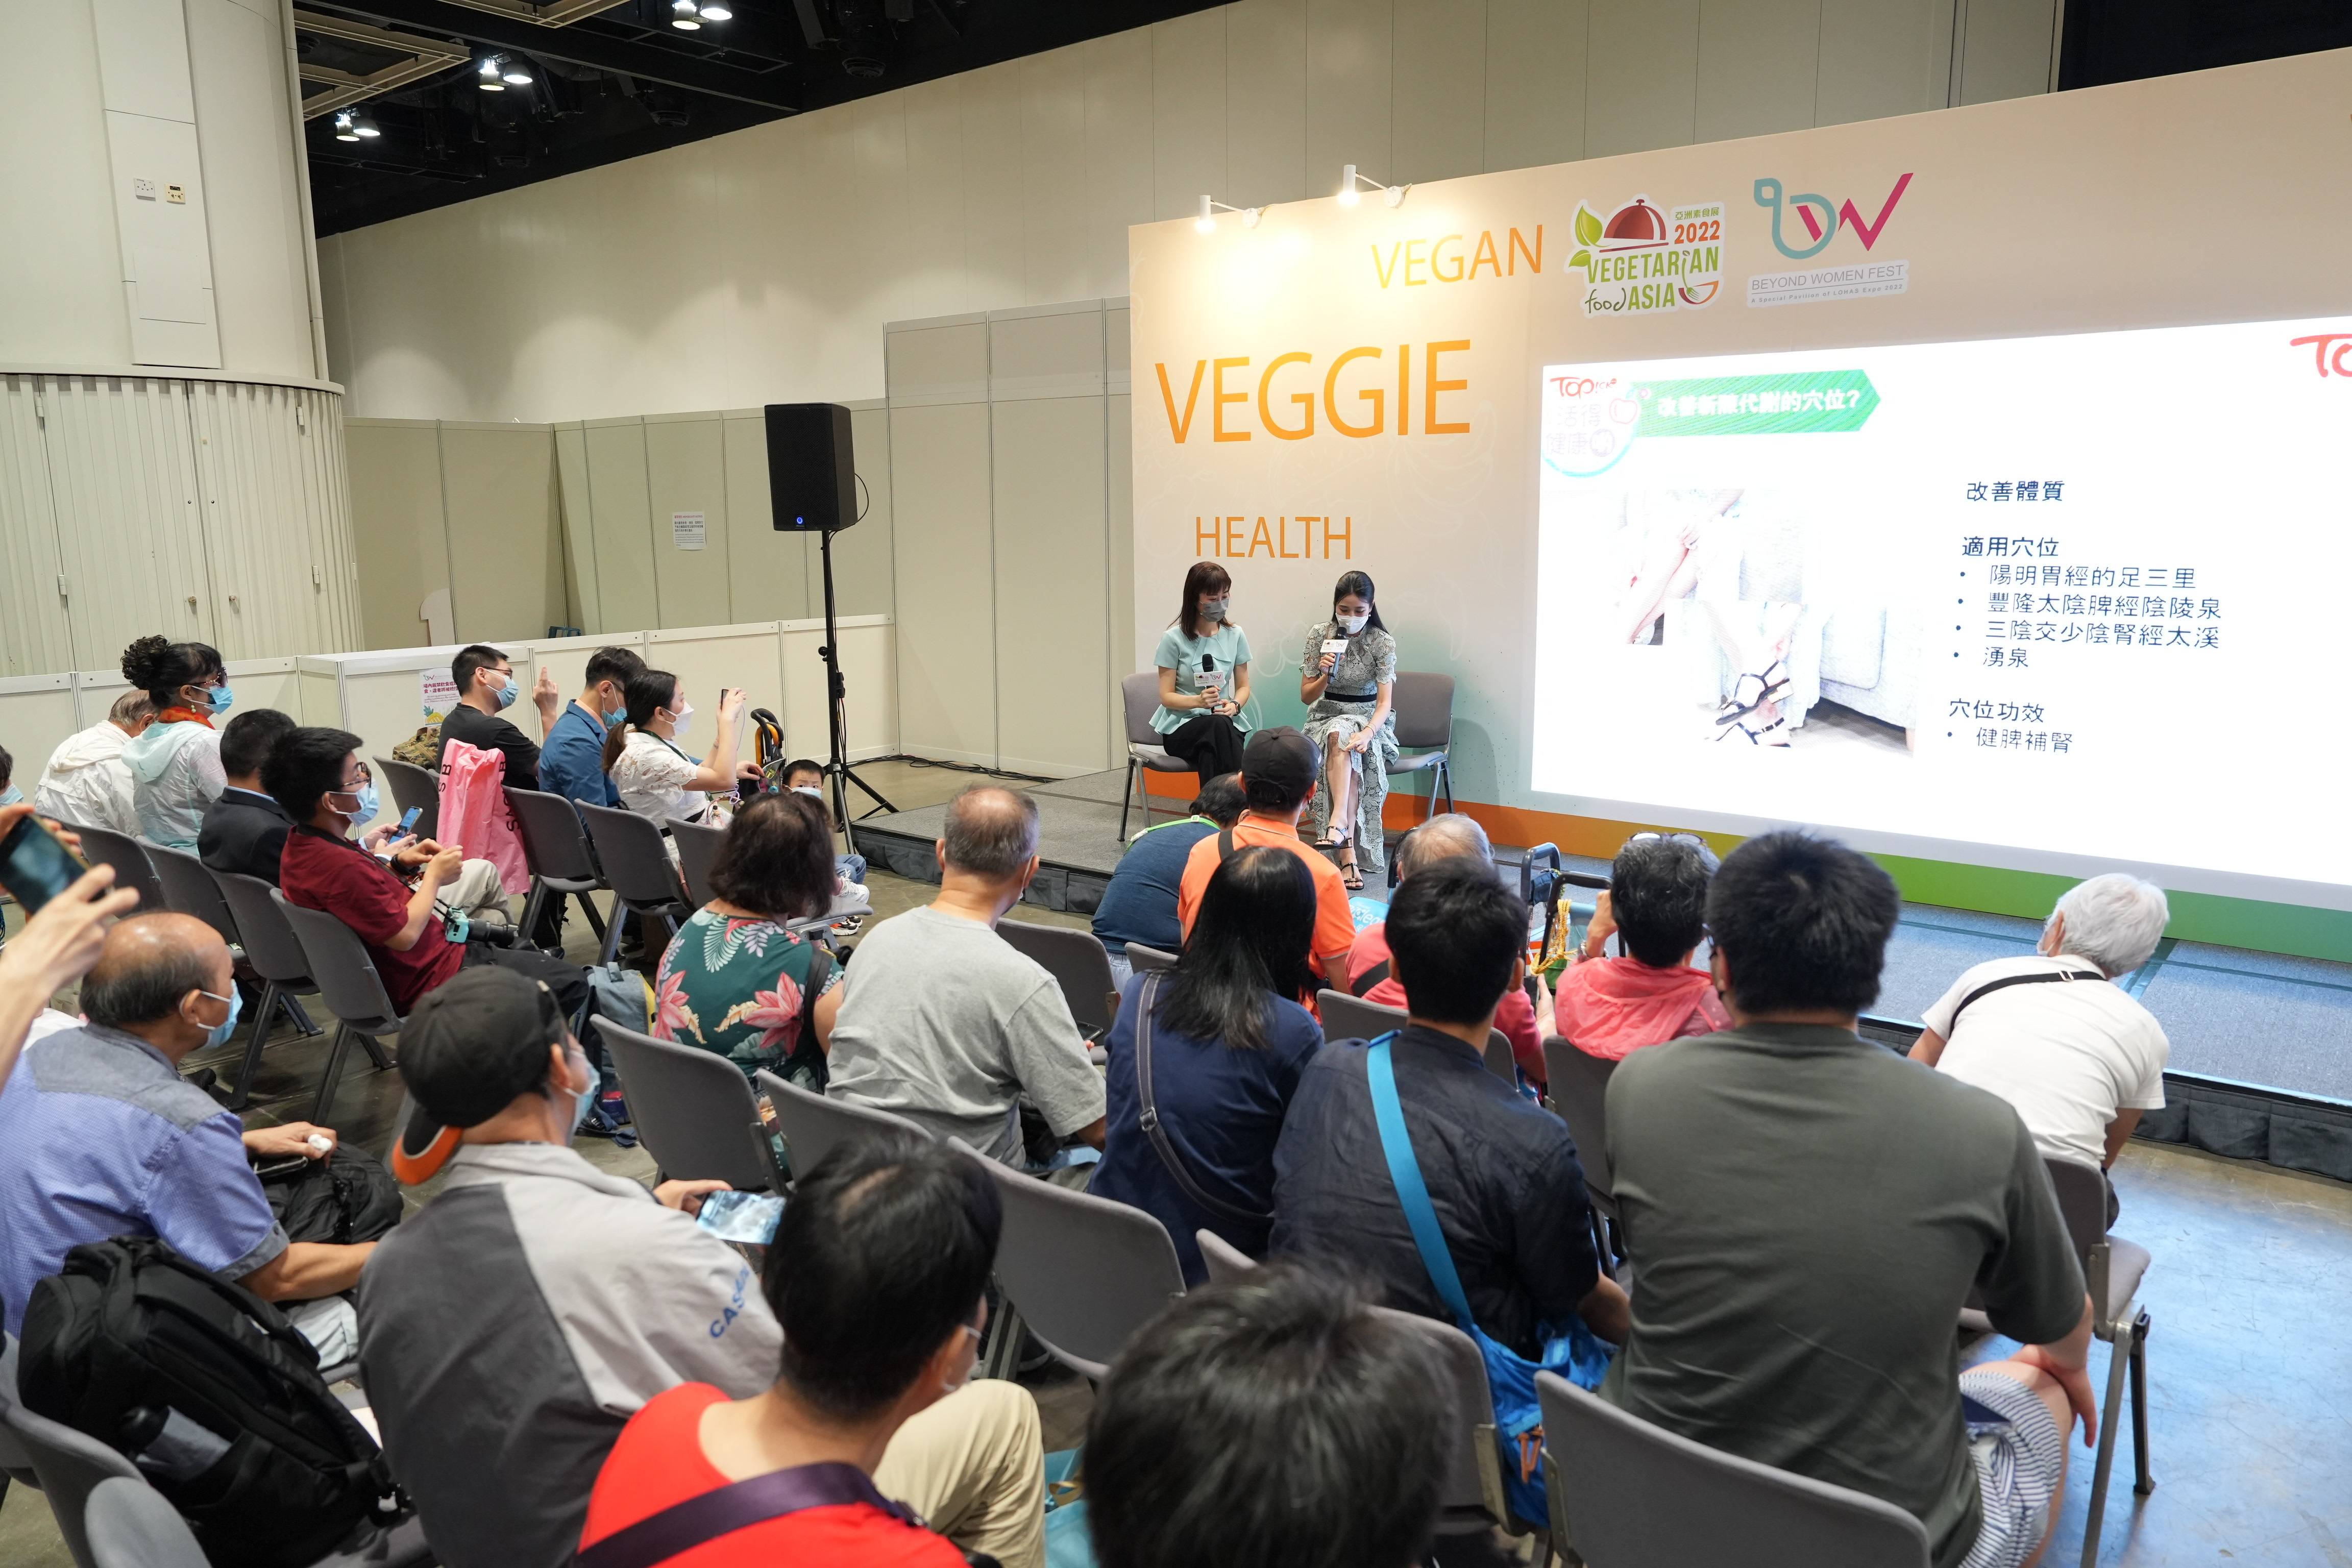 中港通关后首个大型素食活动——亚洲素食展2月17-19日举办